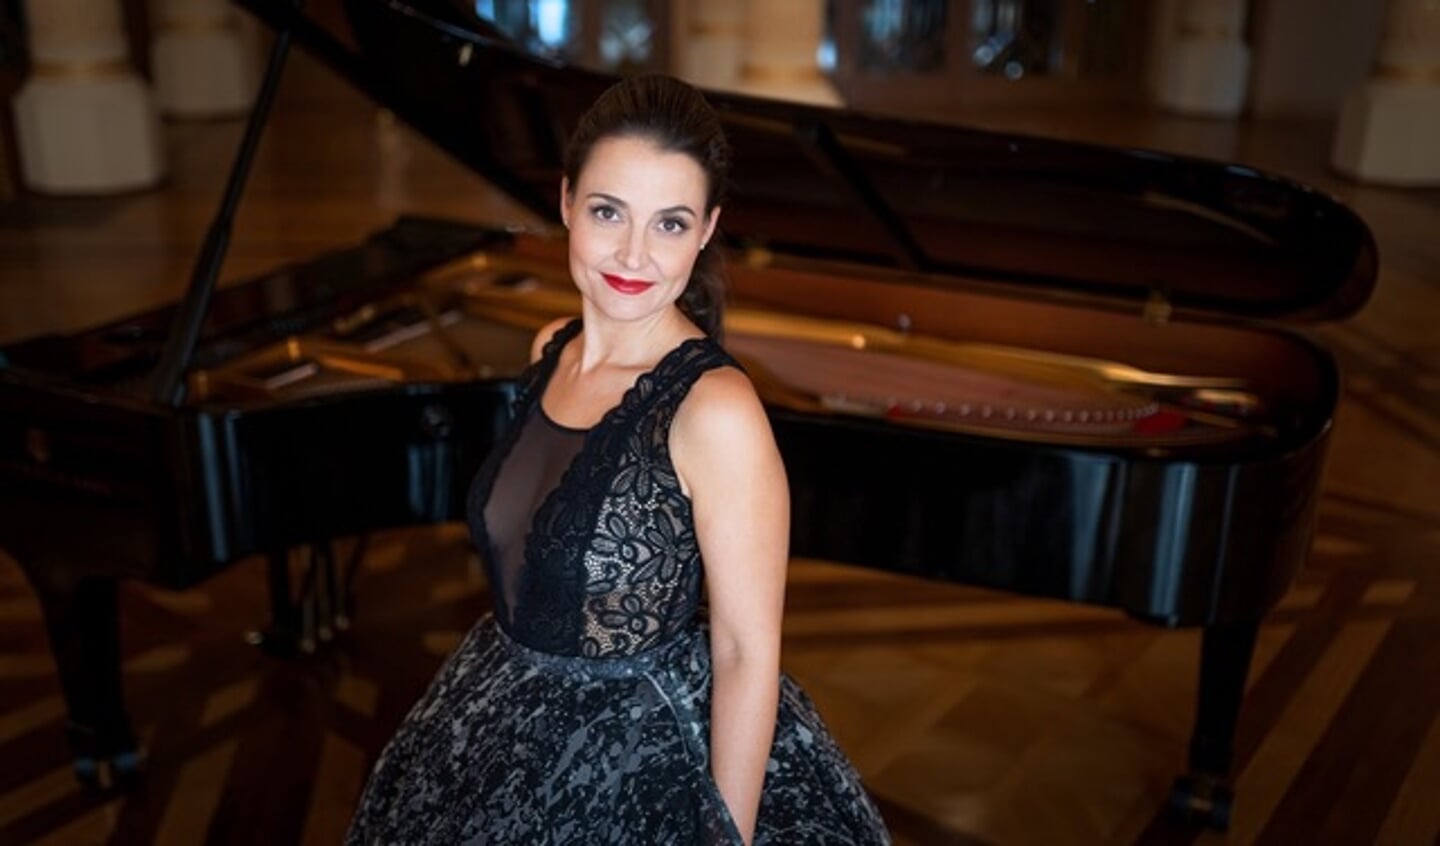  De Hongaarse pianiste Krisztina Fejes staat op 11 augustus op het open podium van Theater Streams Breede Beek. 